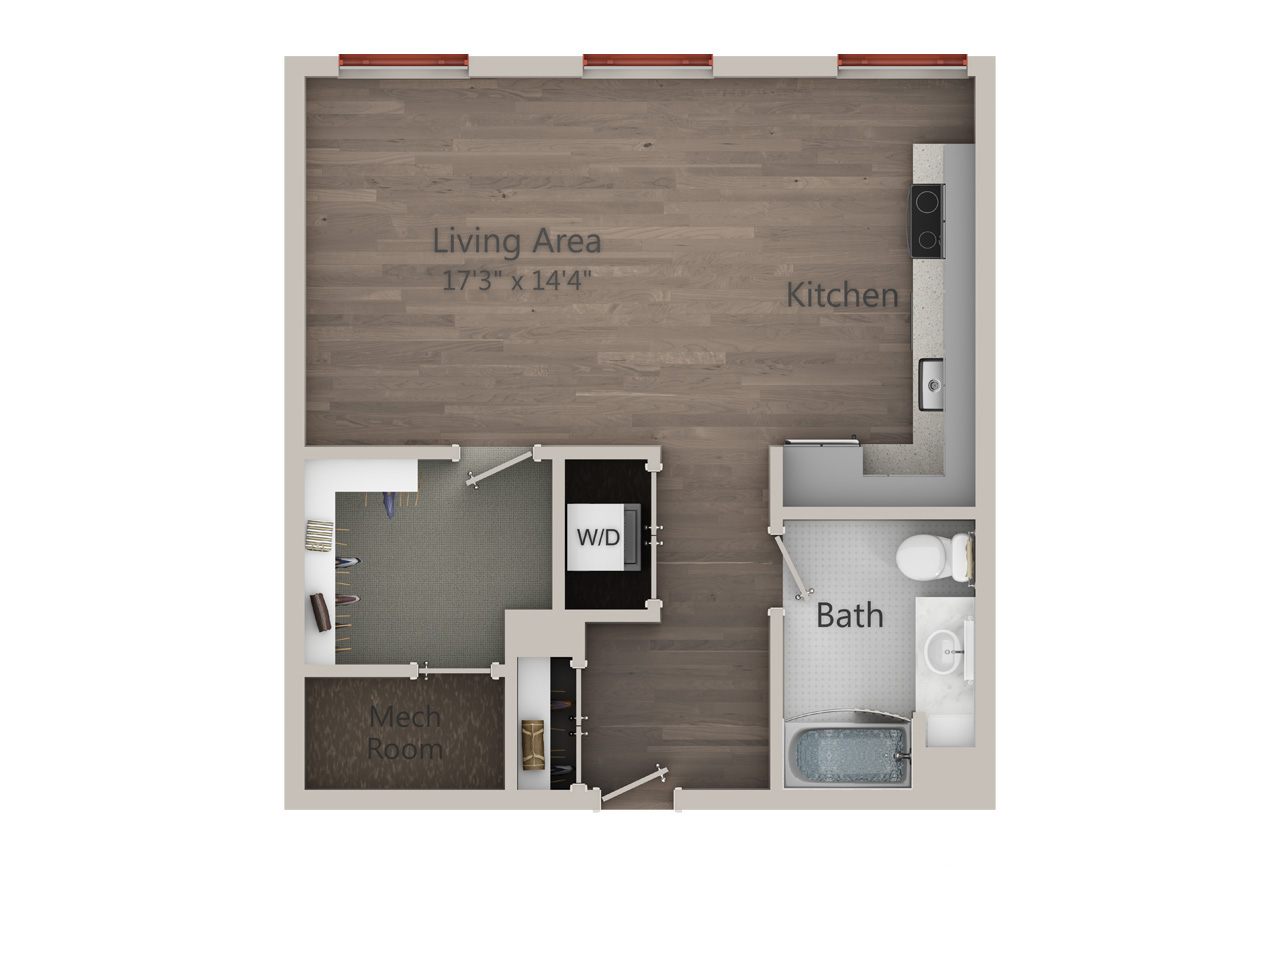 Apartment Image